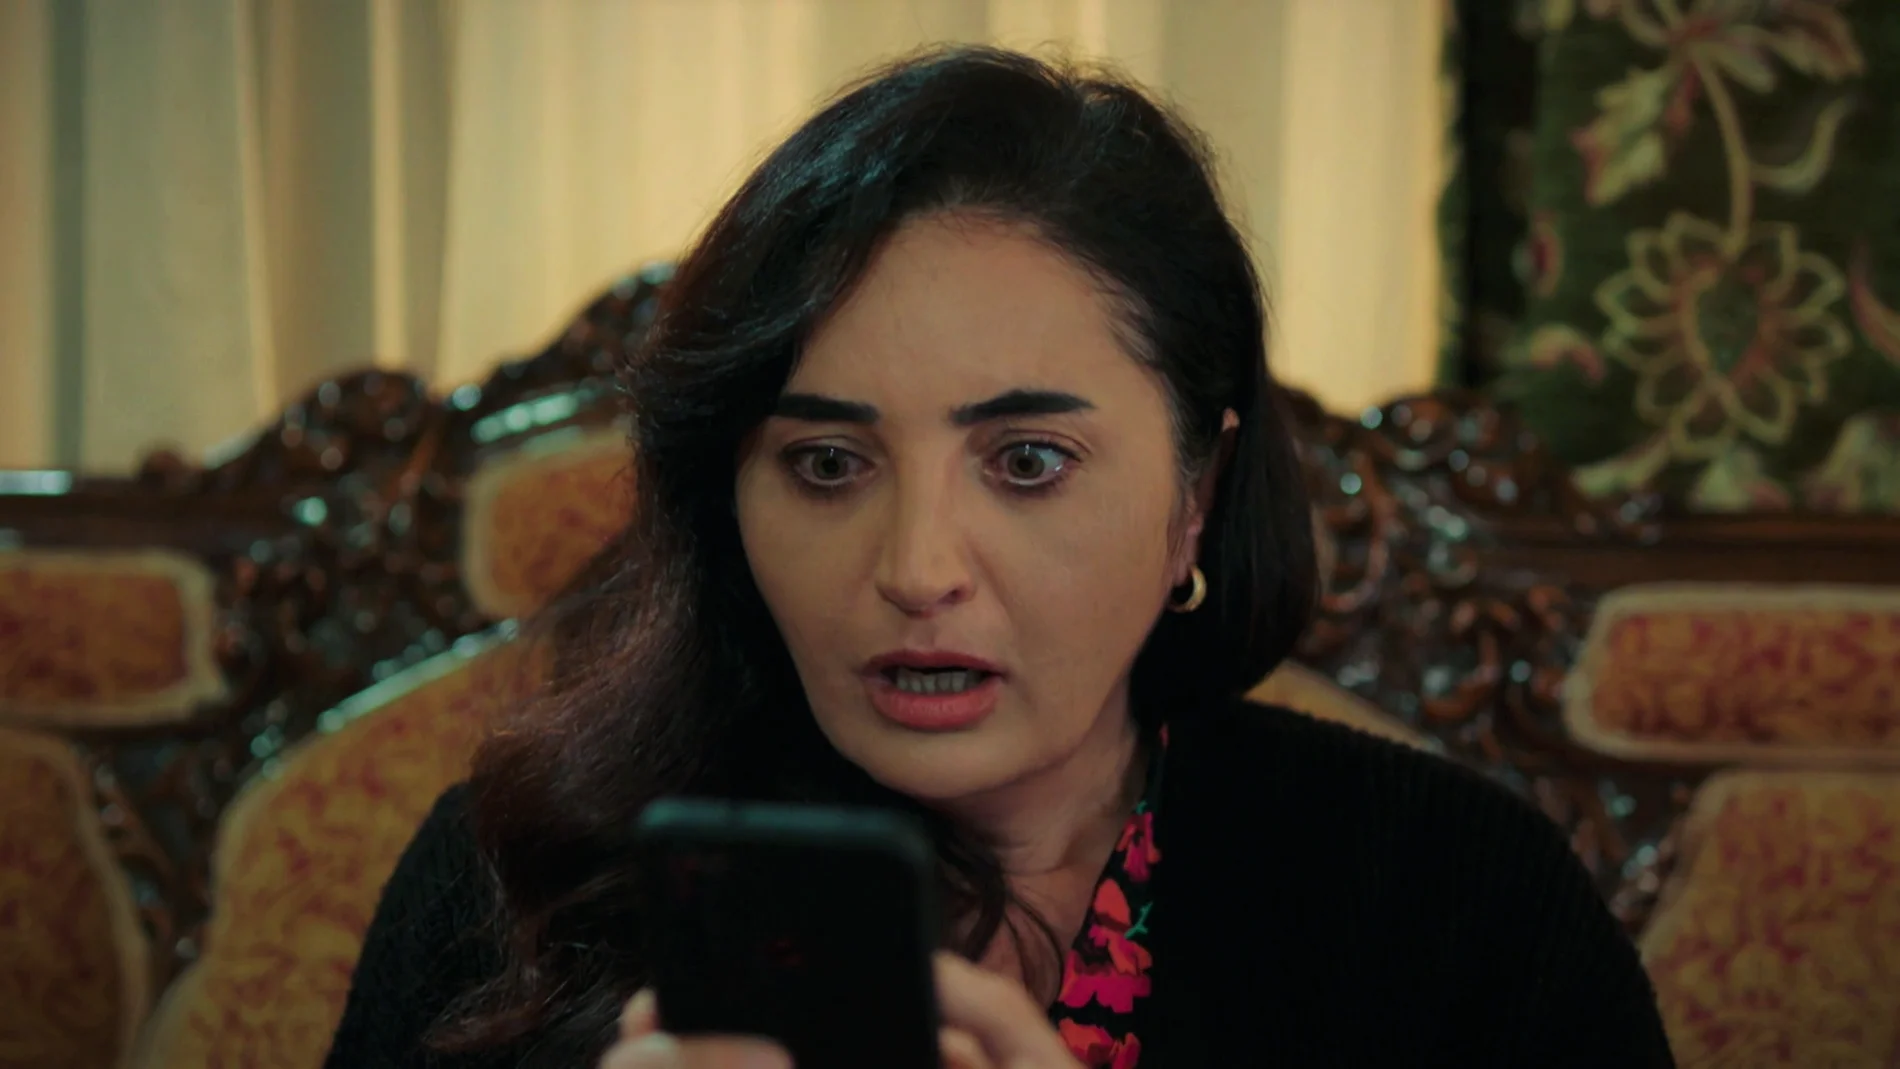 Sengül descubre el vídeo del accidente y se enfrenta a Akif: “¿Quién chocó contra Kadir?”